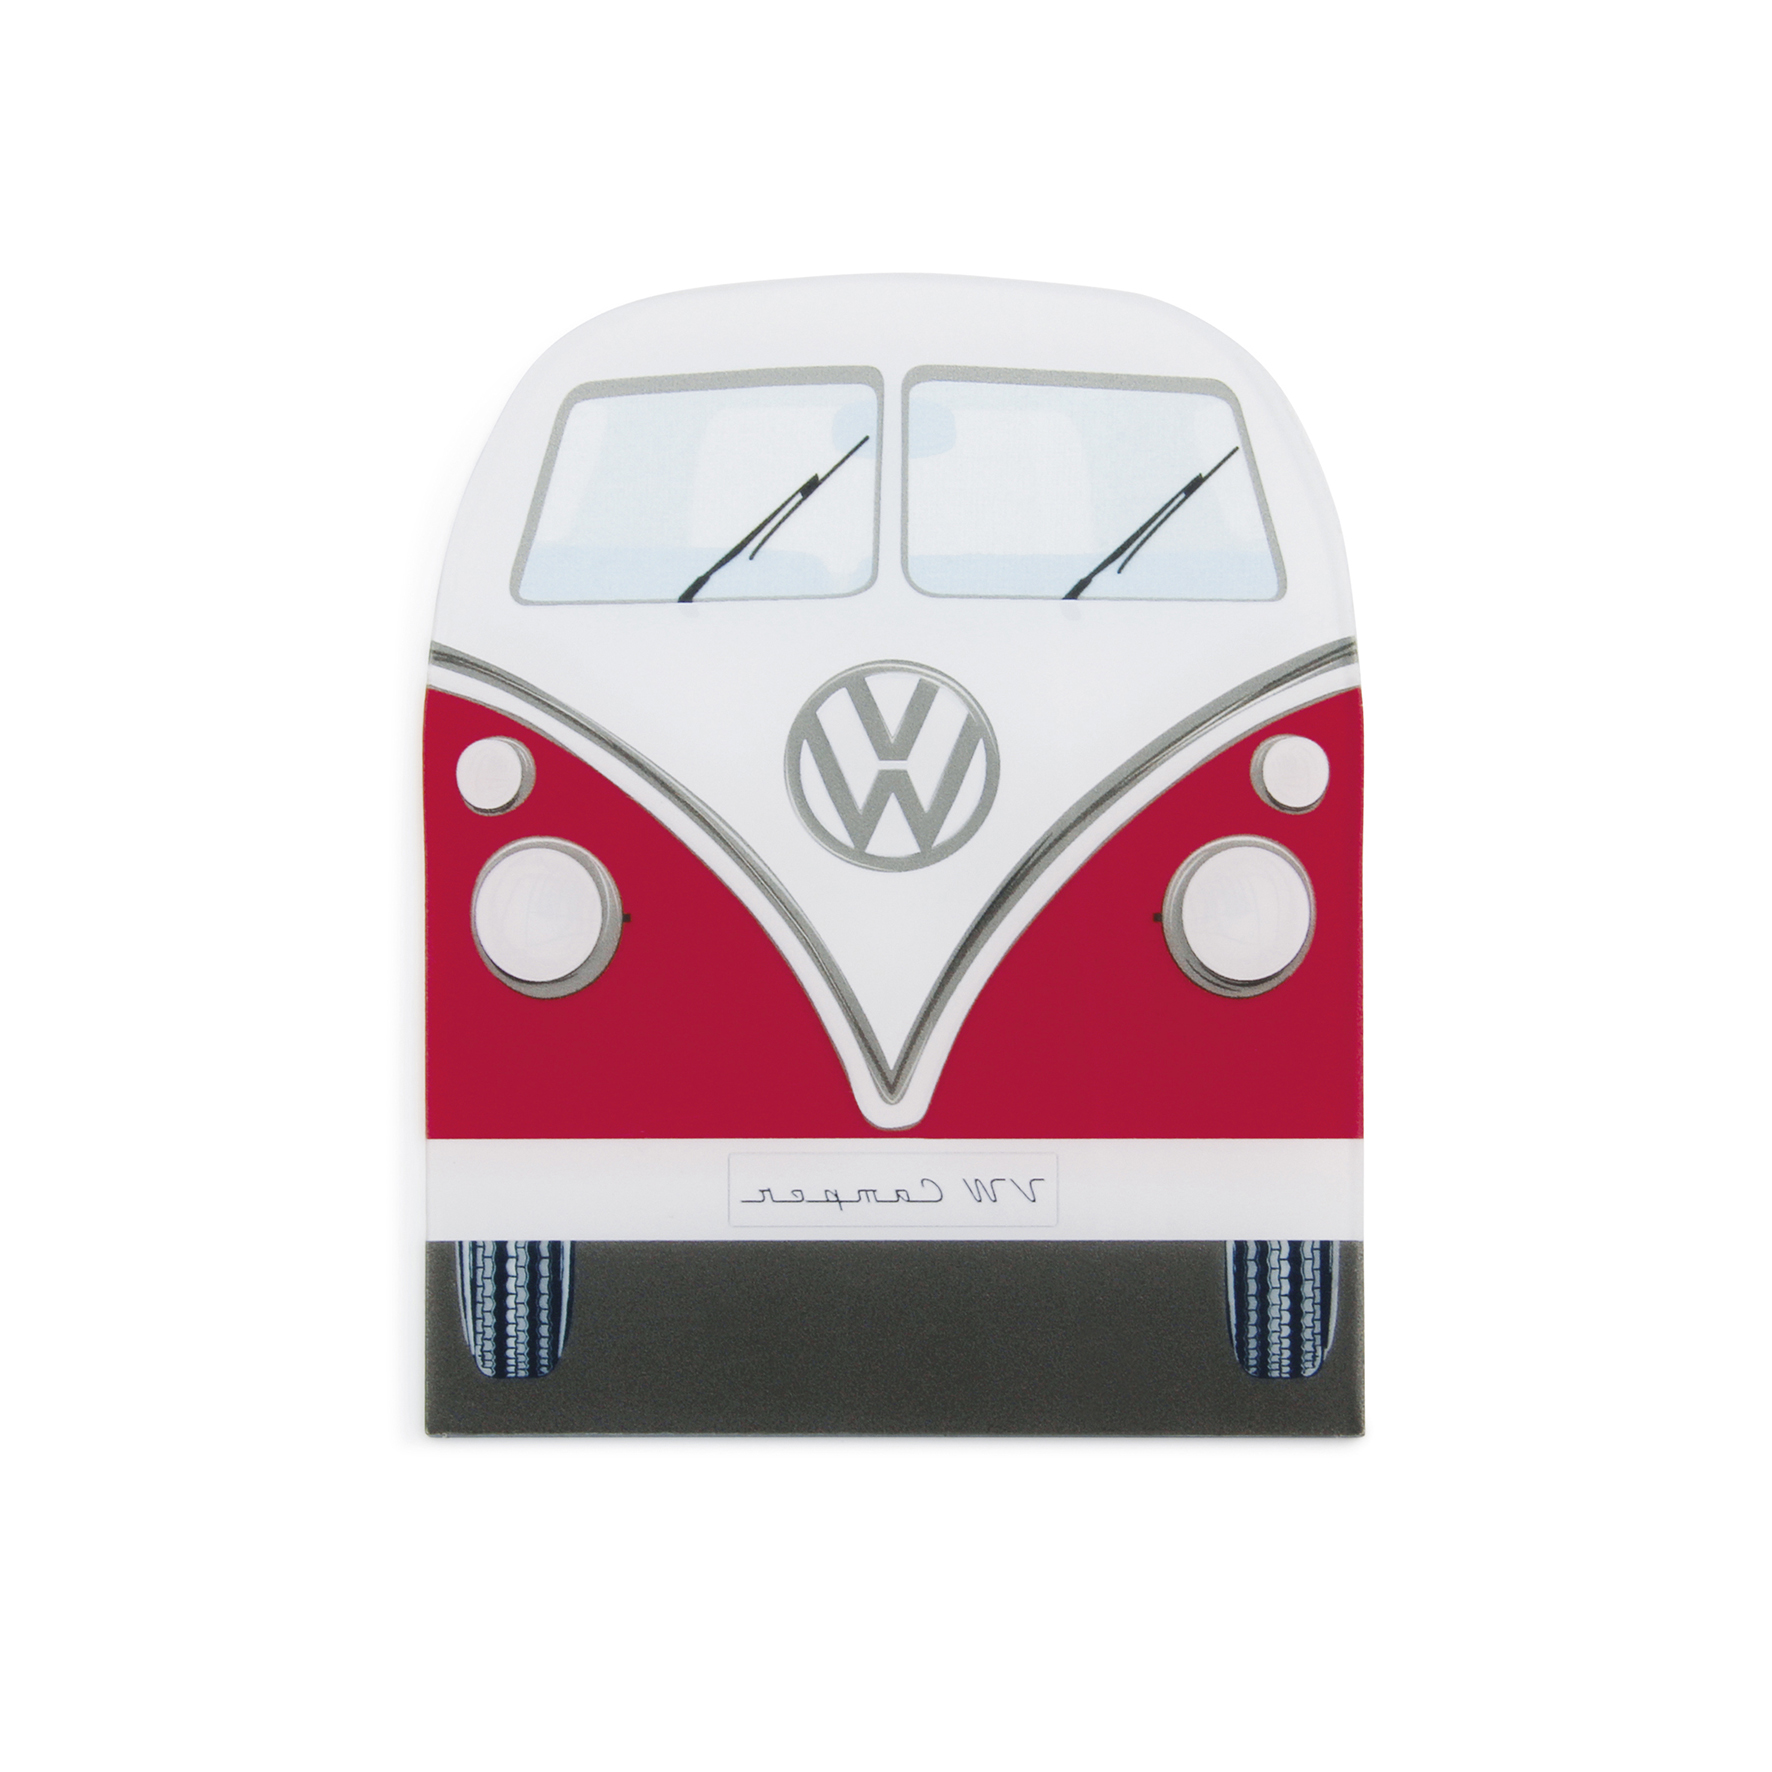 VW Collection VW T1 Bus Faltbox - KFZ-Zubehör online kaufen